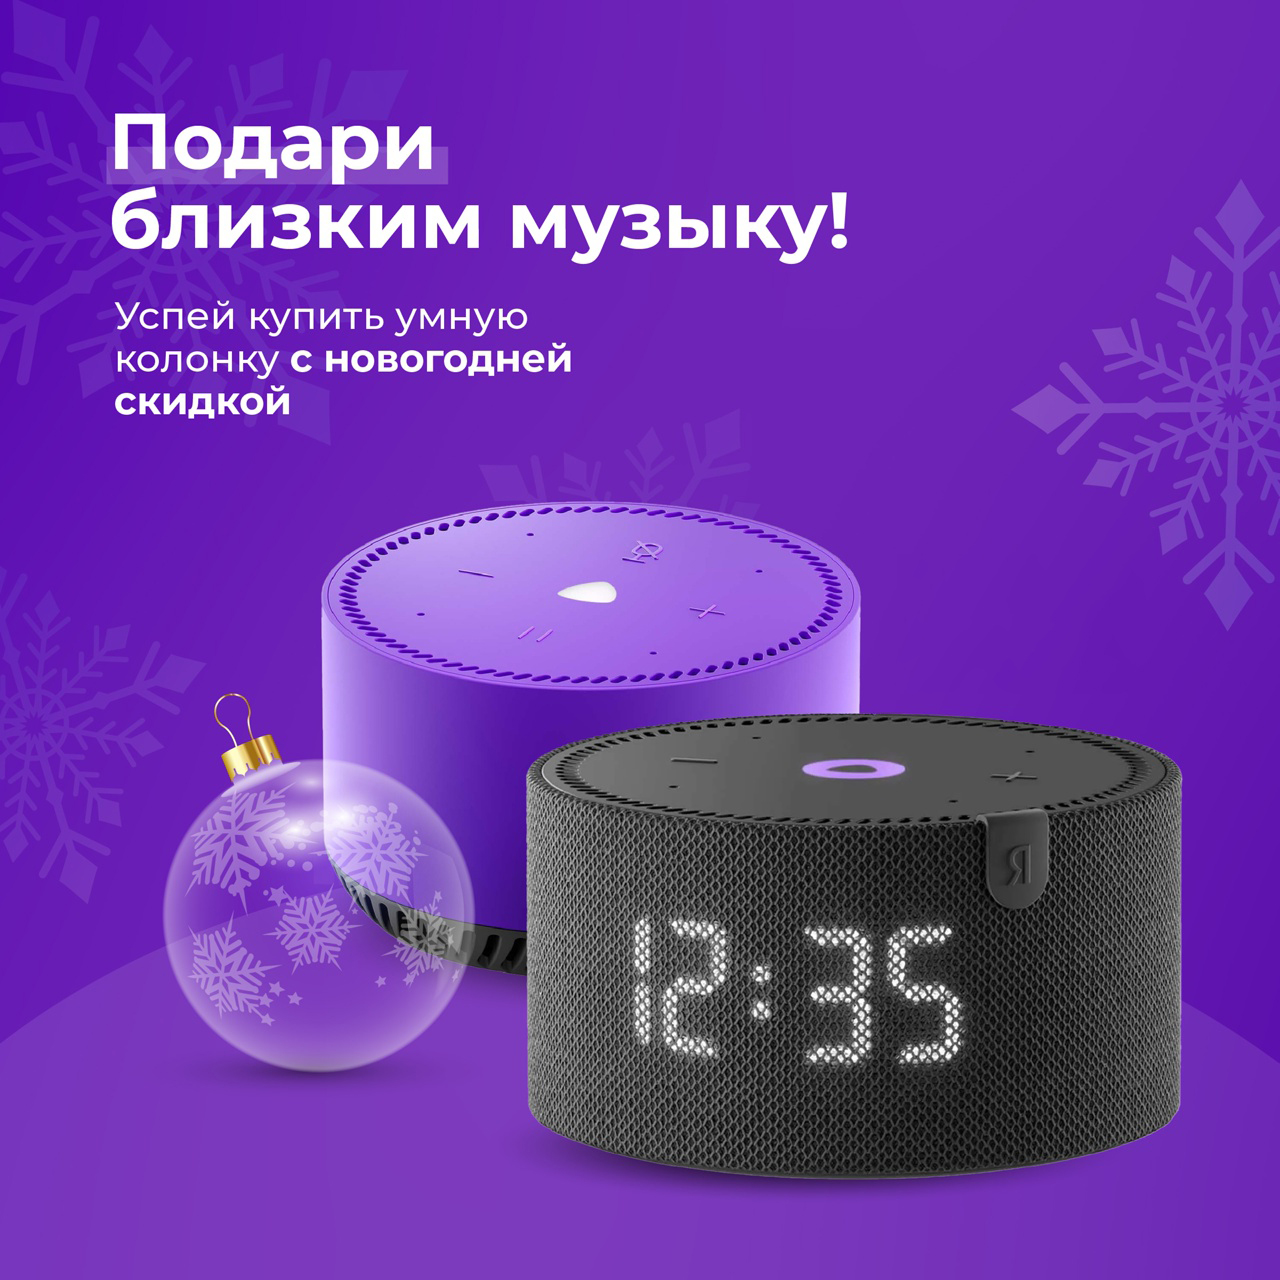 Колонка Яндекс.Станция с Алисой - с новогодней скидкой в магазинах MMI